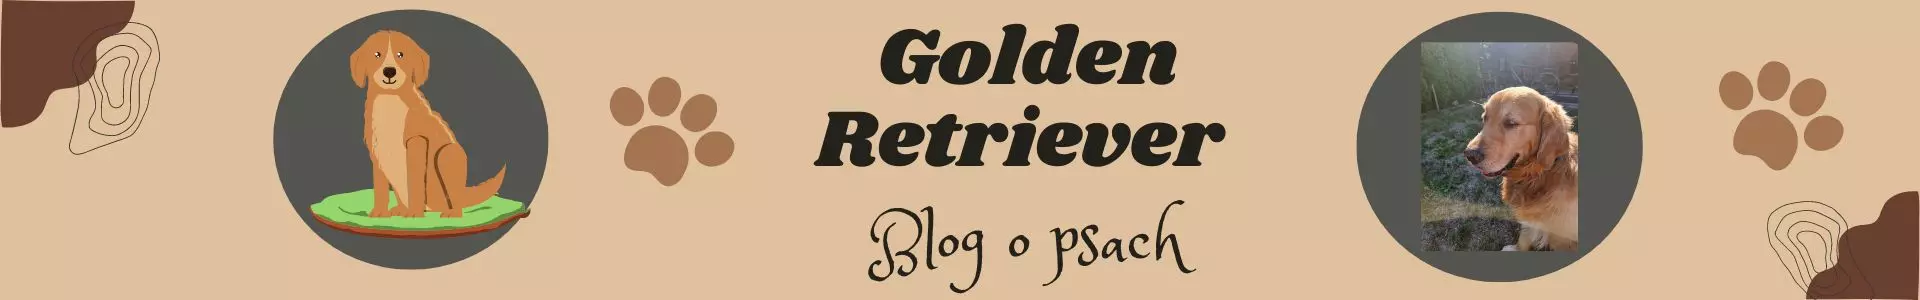 Golden Retriever logo blog